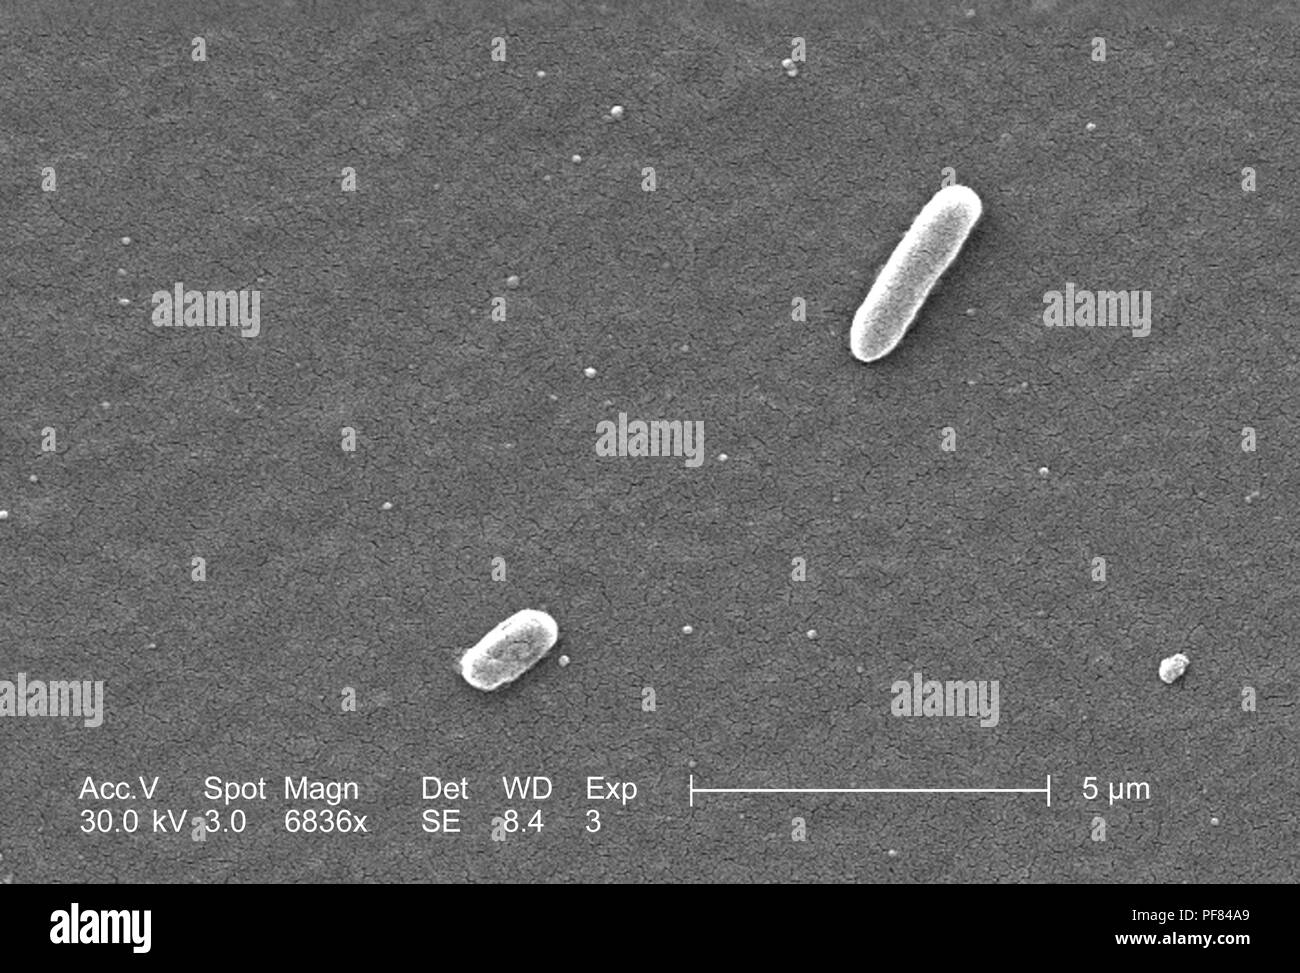 Gram-negativi Batteri Escherichia coli del ceppo O157:H7, ha rivelato nel 6836x di scansione ingrandita al microscopio elettronico (SEM) immagine, 2006. Immagine cortesia di centri per il controllo delle malattie (CDC) / Nazionale Escherichia, Shigella, Vibrio unità di riferimento presso la CDC. () Foto Stock